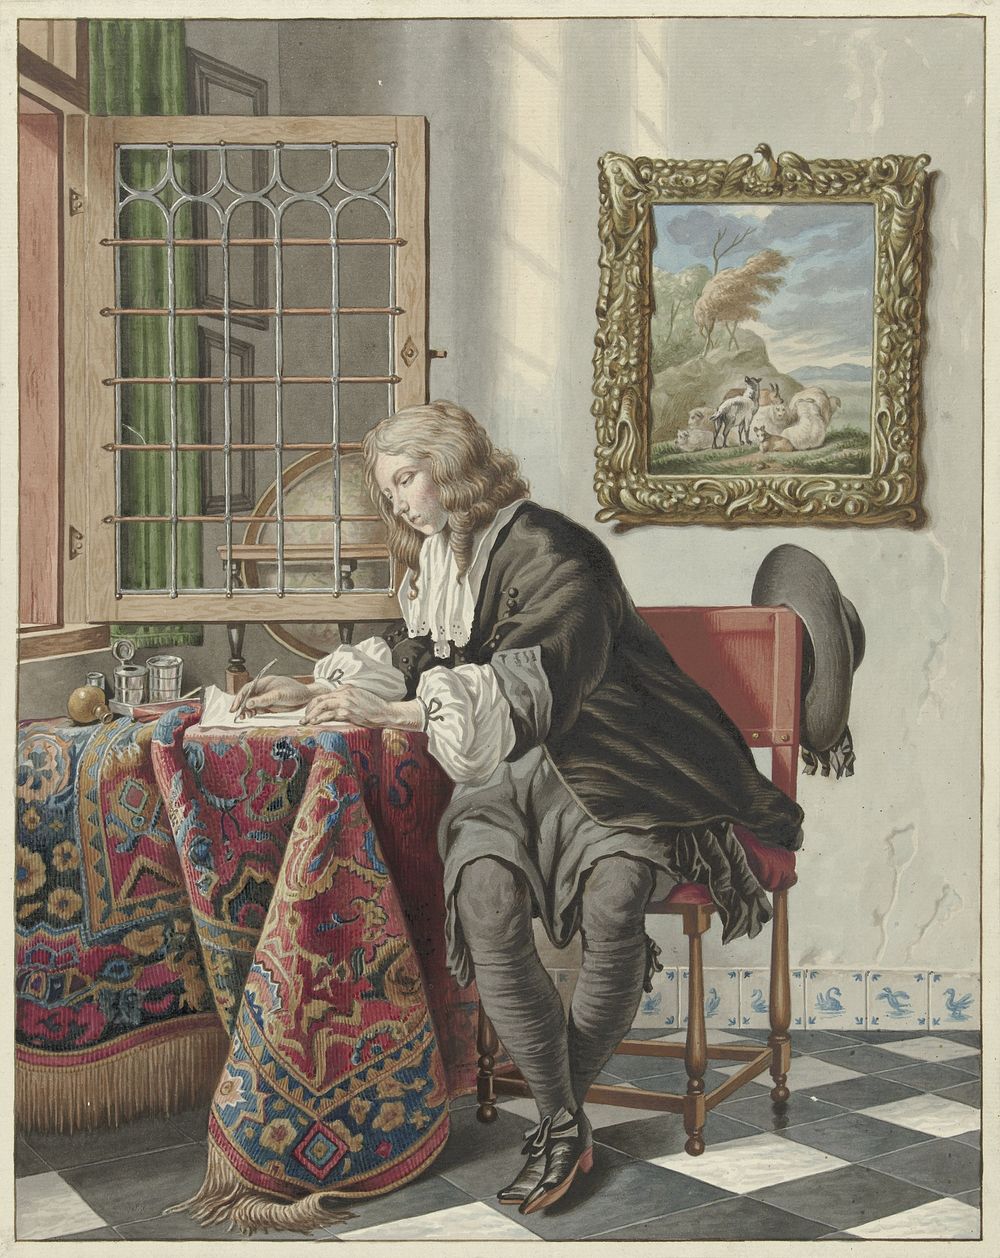 Schrijvende jongeman aan een venster (1734 - 1785) by Jan Stolker and Gabriël Metsu